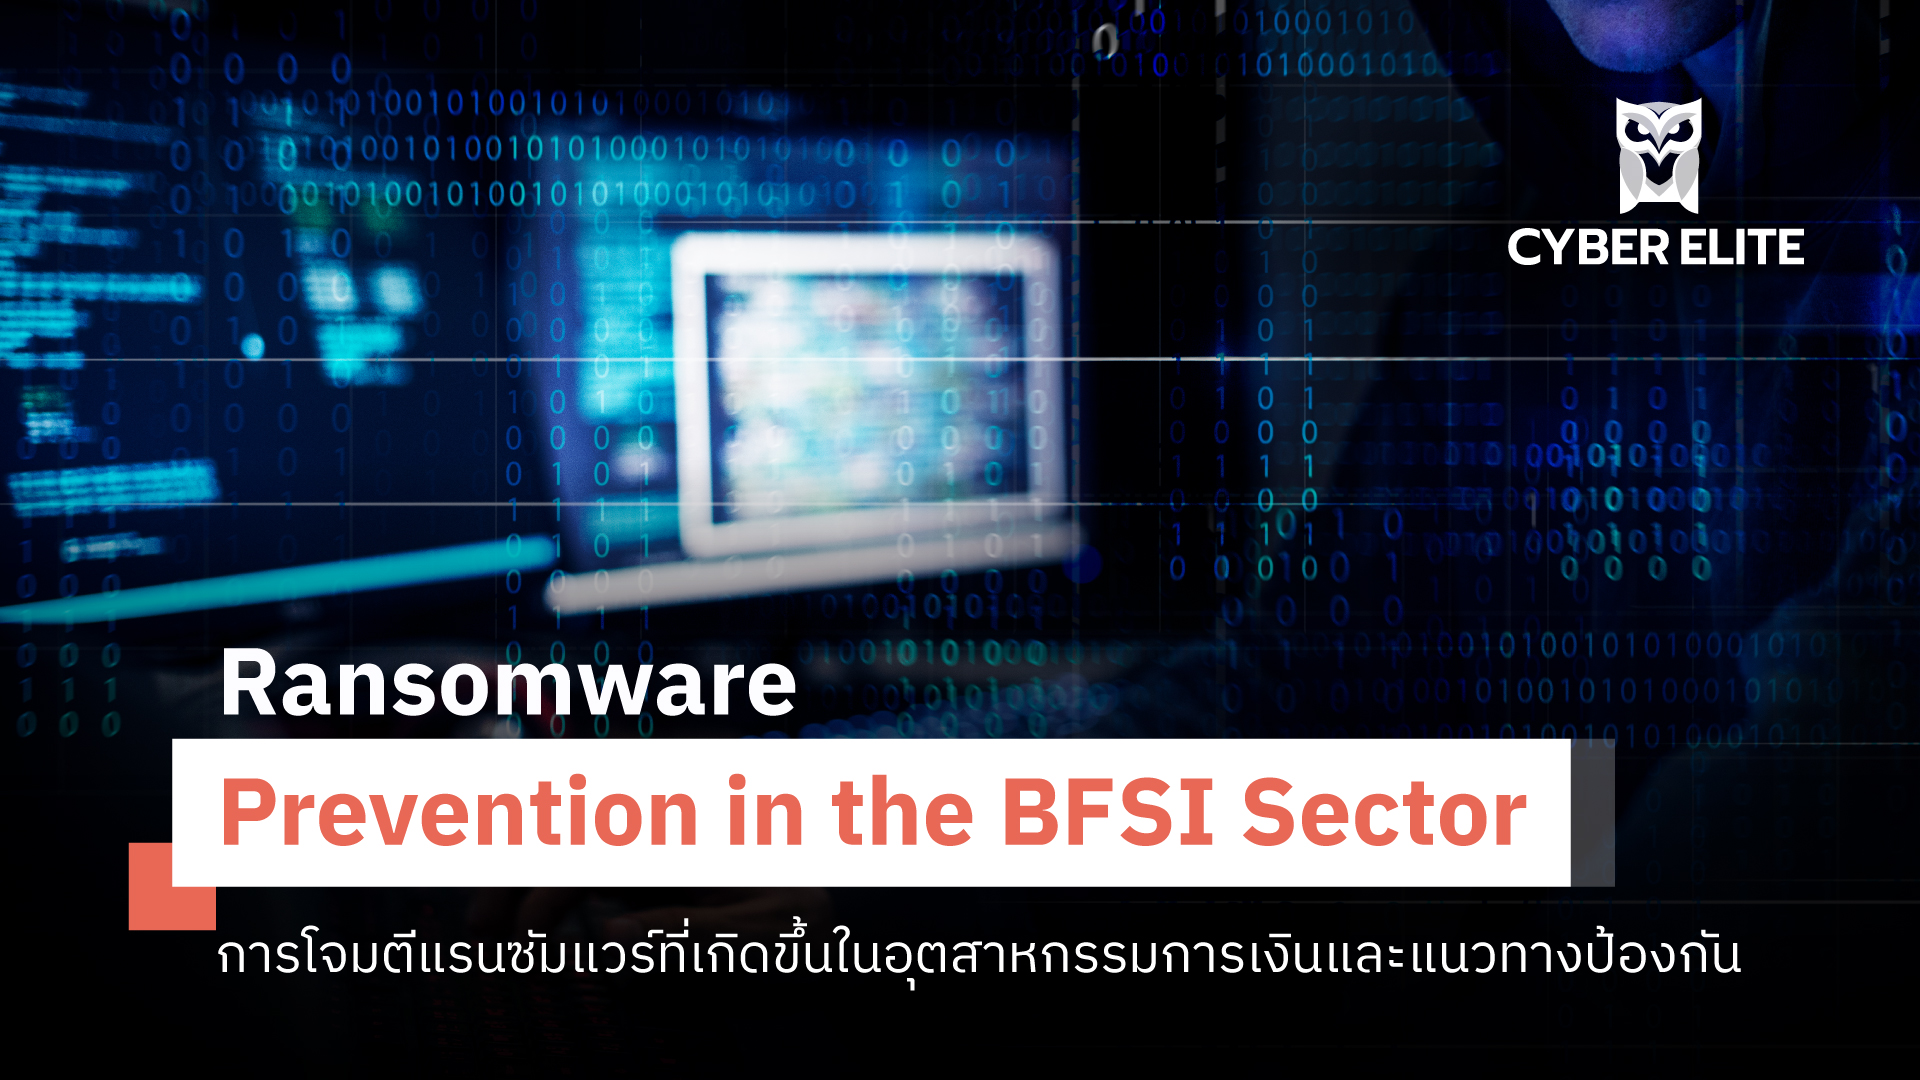 การโจมตีแรนซัมแวร์ที่เกิดขึ้นในอุตสาหกรรมการเงินและแนวทางป้องกัน (Ransomware Prevention in the BFSI Sector)